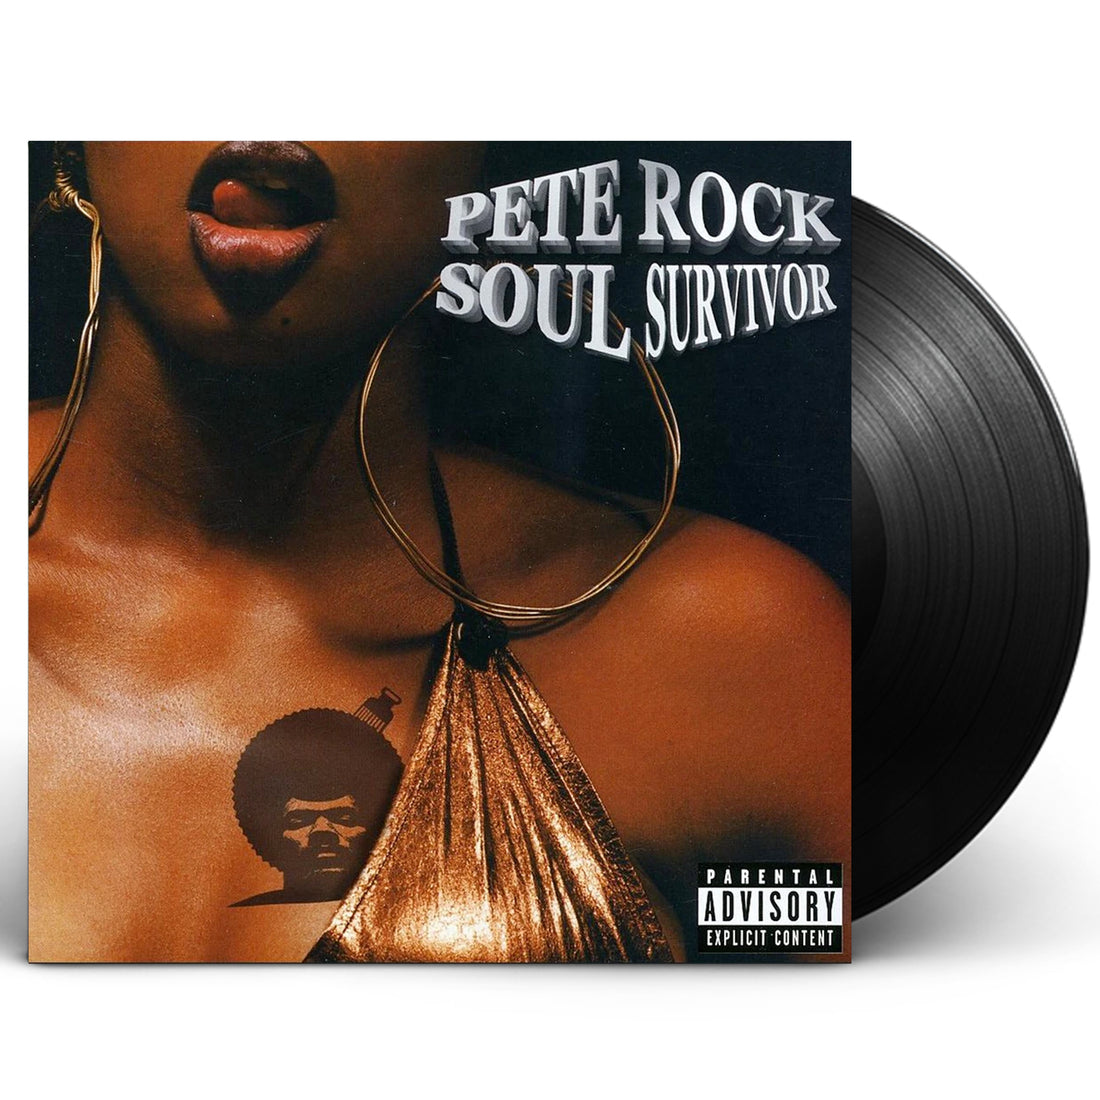 Pete Rock "Soul Survivor" 2xLP Vinyl